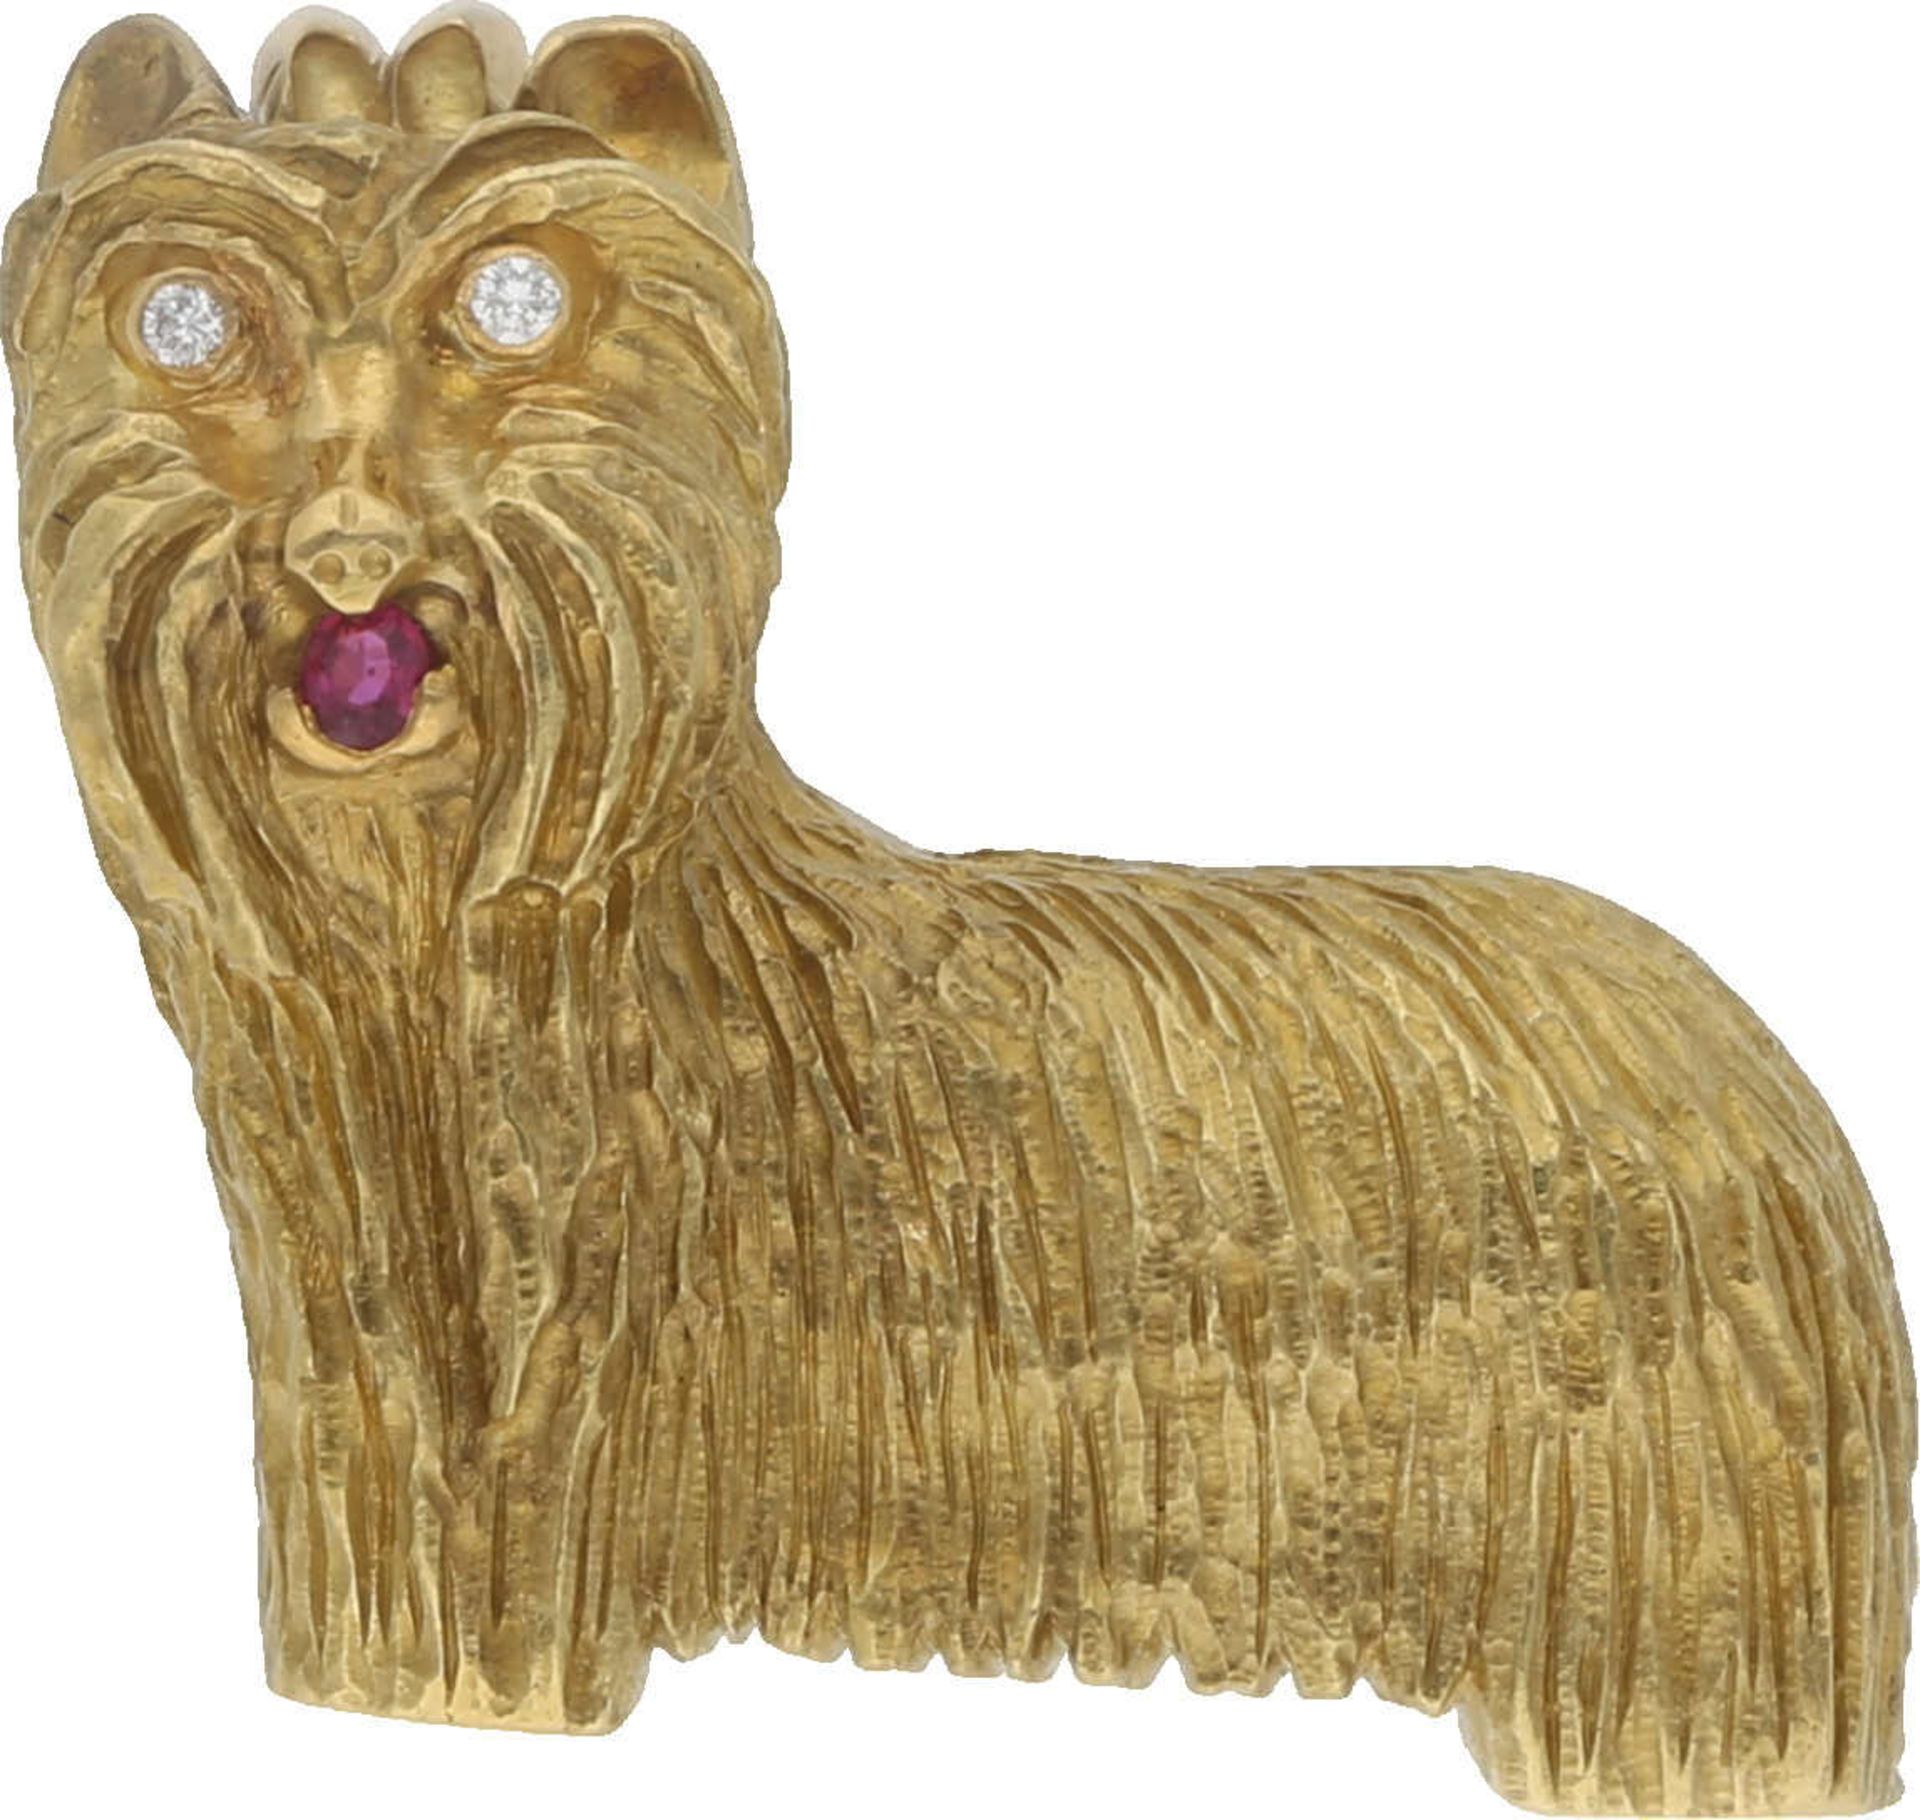 Brosche Terrier-Hunde Brosche in Gelbgold 18K detailgetreu ausgearbeitet, mit 2 Brillanten von ca.